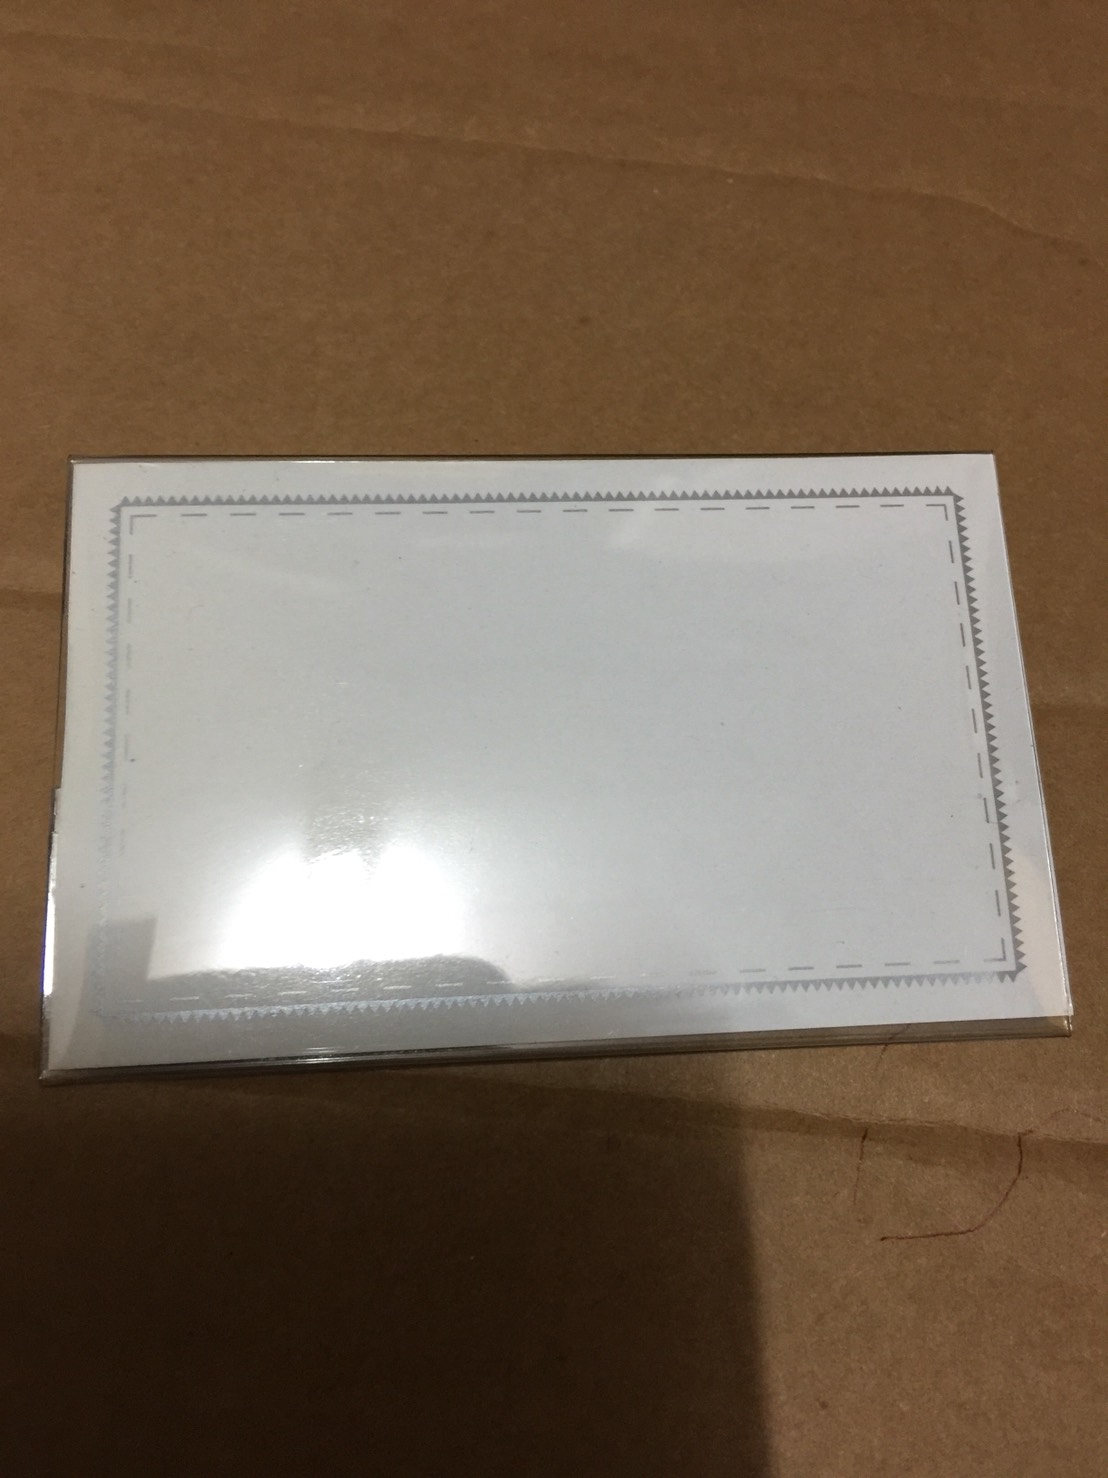 ป้ายชื่อพลาสติกแข็งมีคลิปหนีบSAKURA-PVC(กล่องละ50อัน)